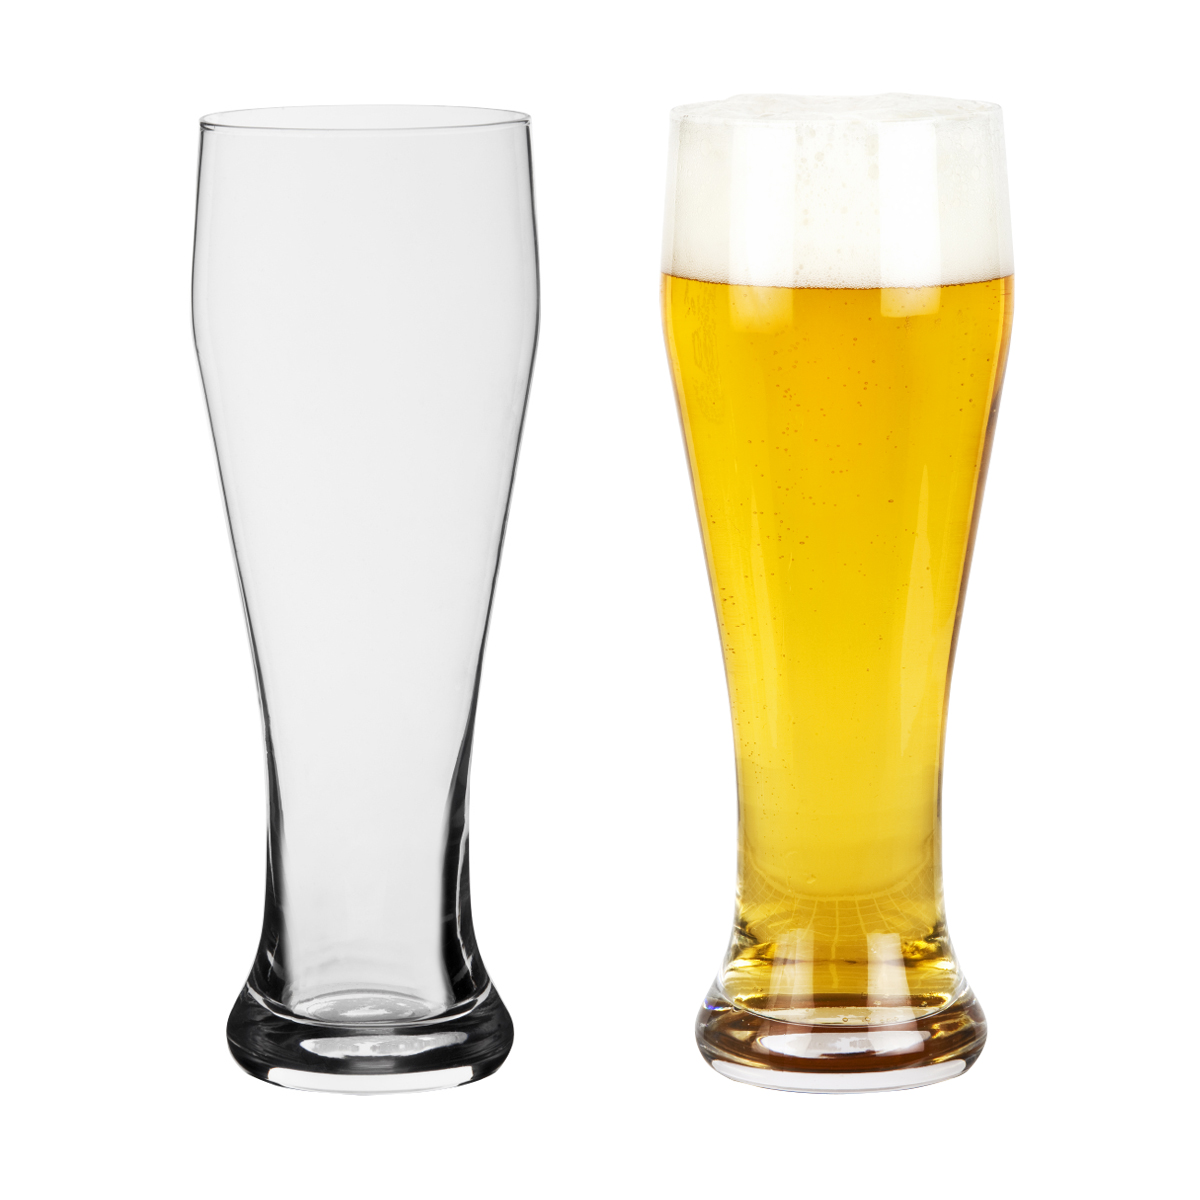 קובלנץ - כוס בירה בסגנון ווילי.
נפח 420 מ”ל.
מידות הכוס: B55,T73,H200 מ”מ.